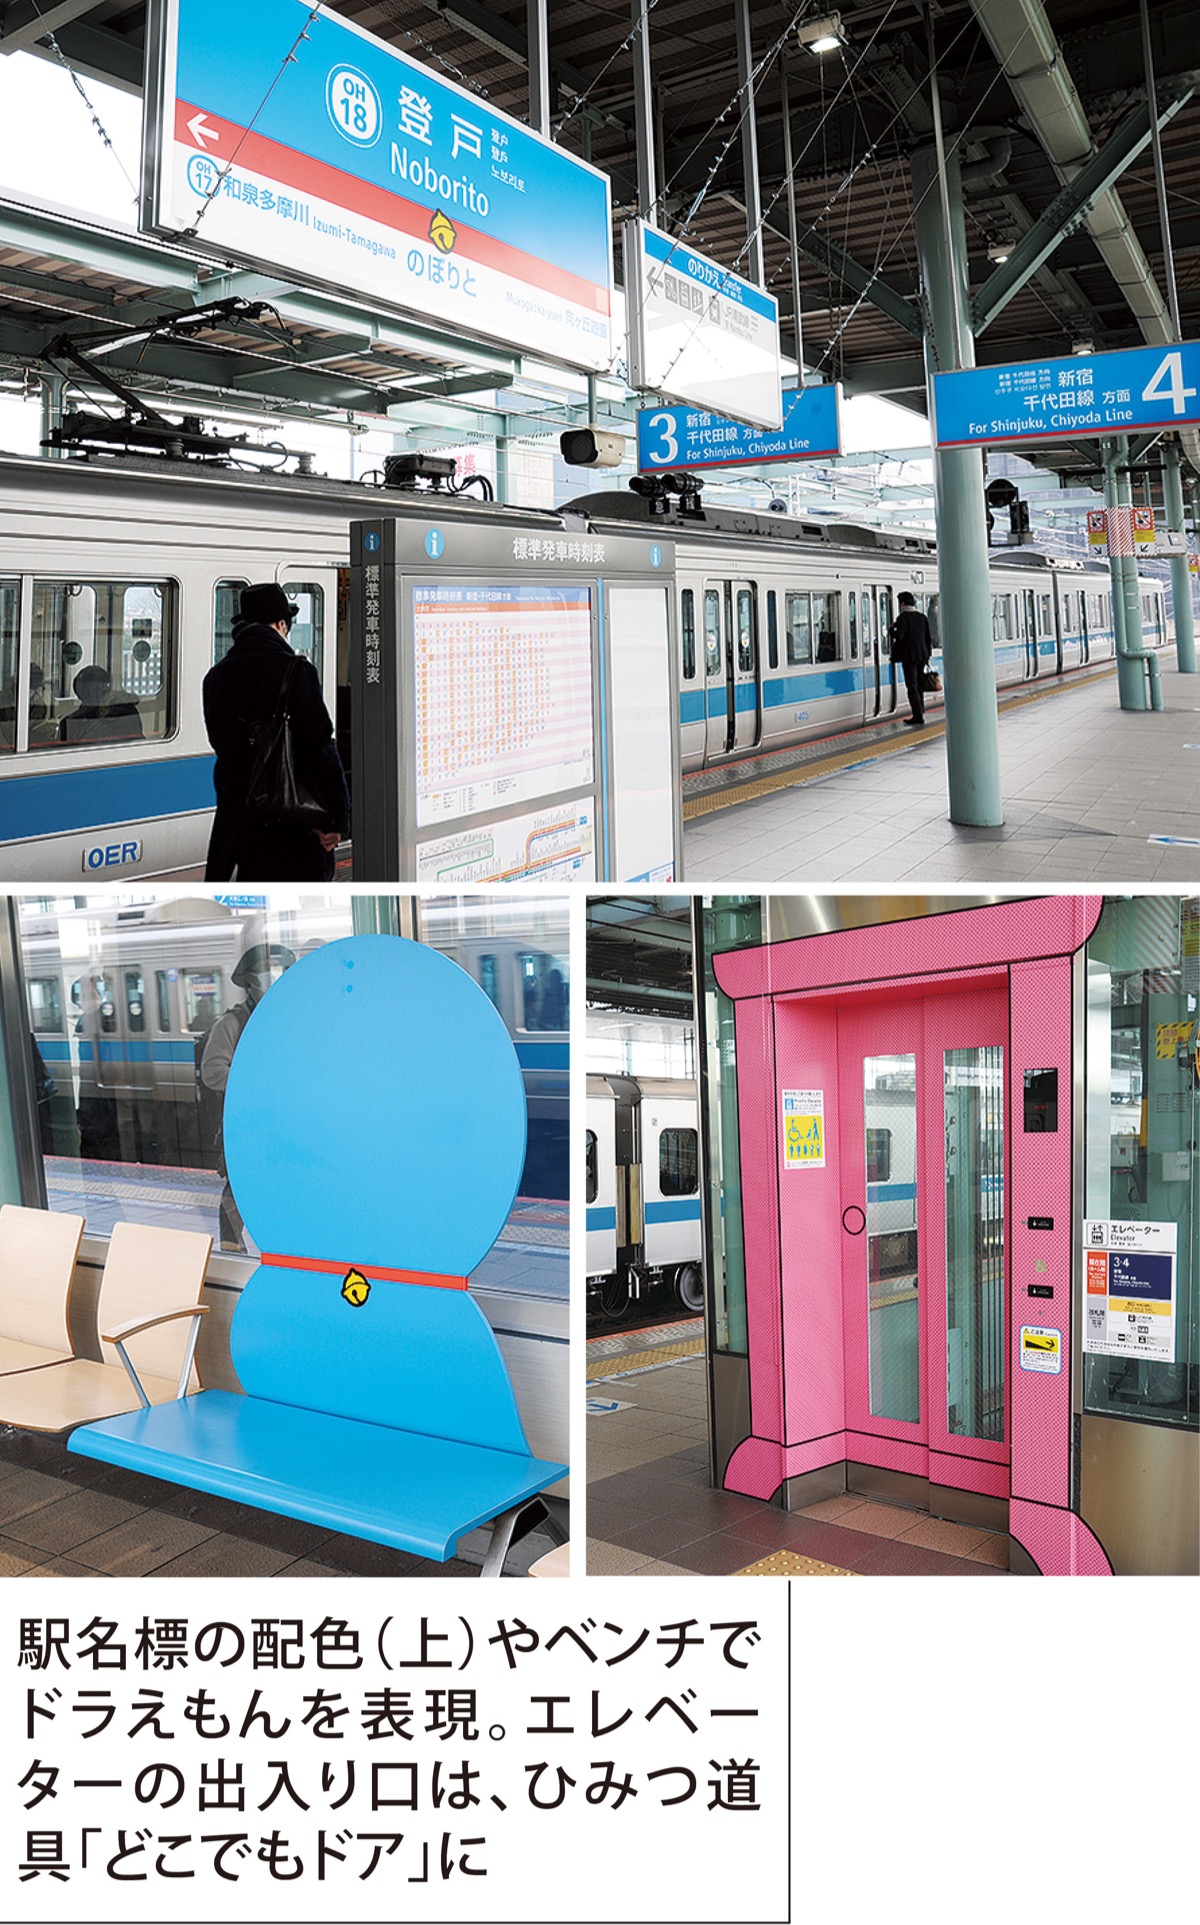 小田急線 登戸駅 ドラえもん装飾で賞 グッドデザイン100に選出 多摩